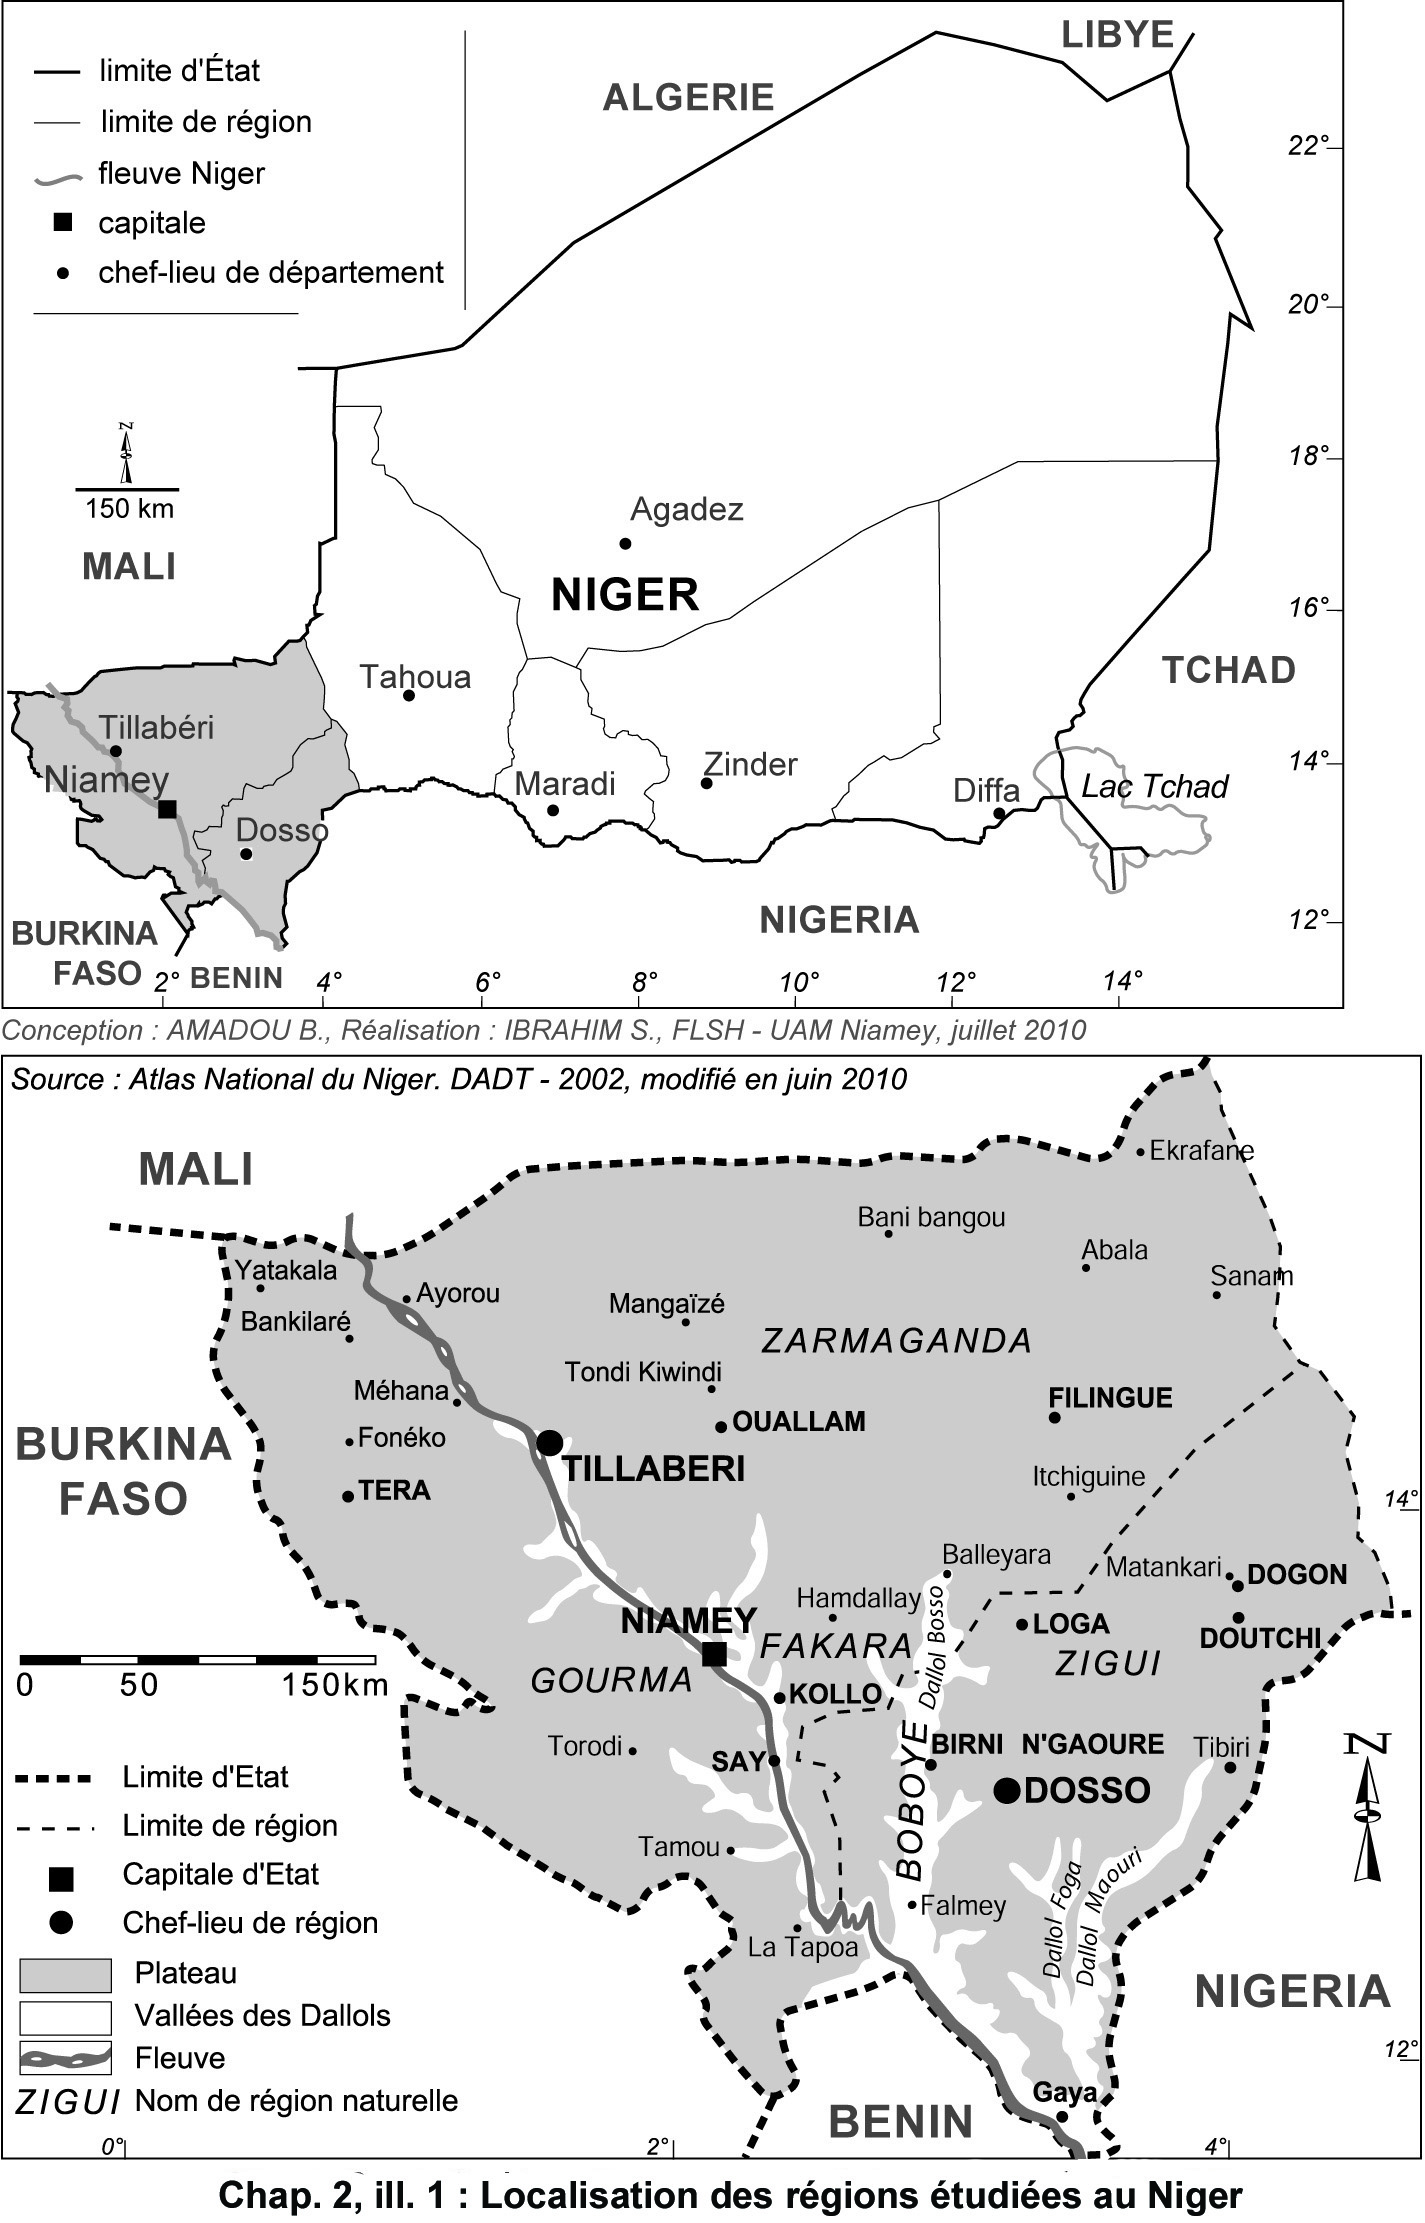 Illustration 1 : Localisation des régions étudiées au Niger